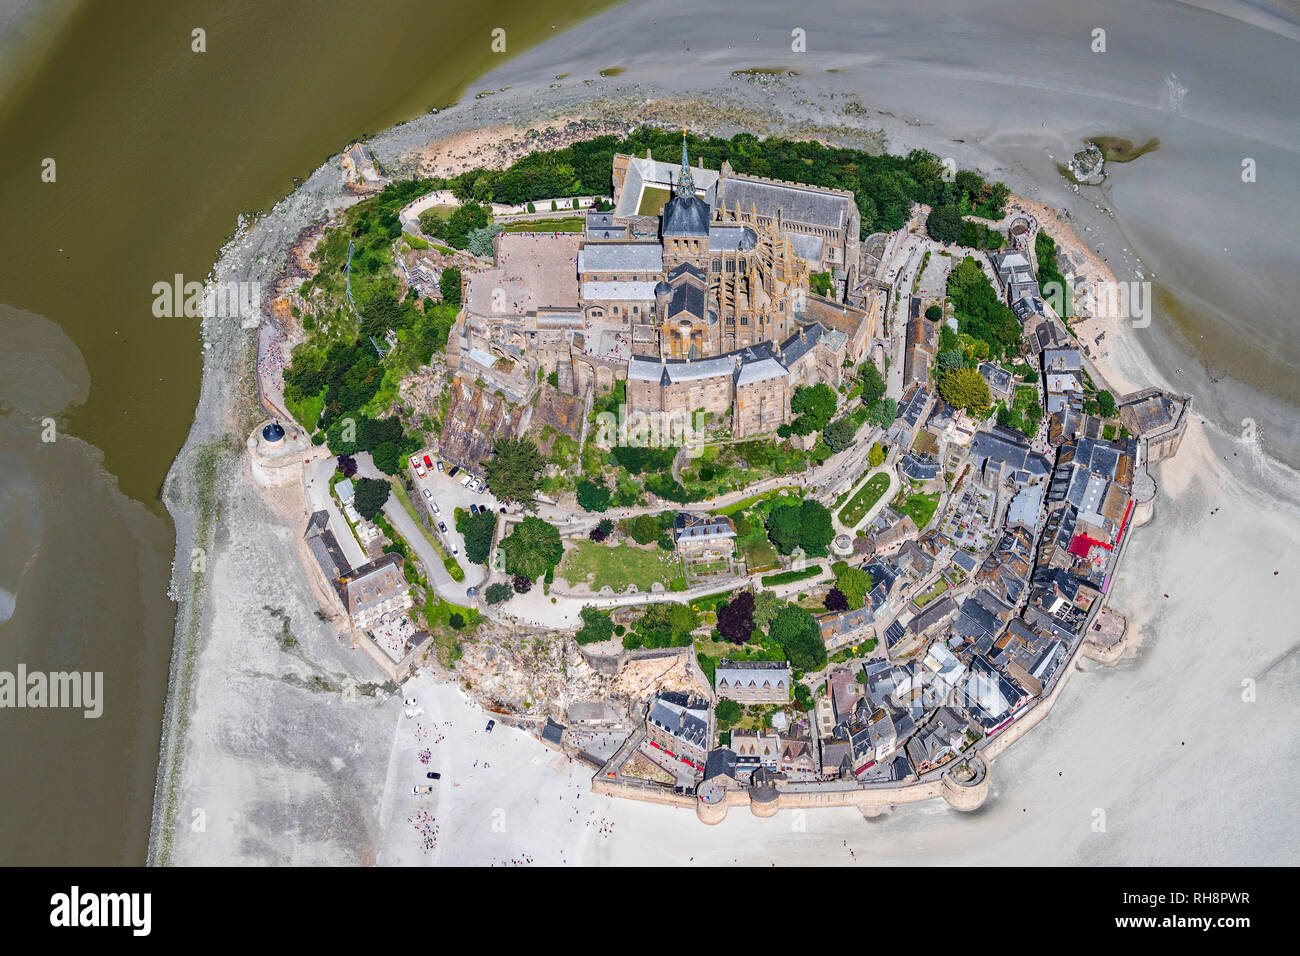 Le Mont-Saint-Michel (Saint Michael's Mount), en Normandie, au nord-ouest de la France : vue aérienne à marée basse *** *** légende locale Banque D'Images